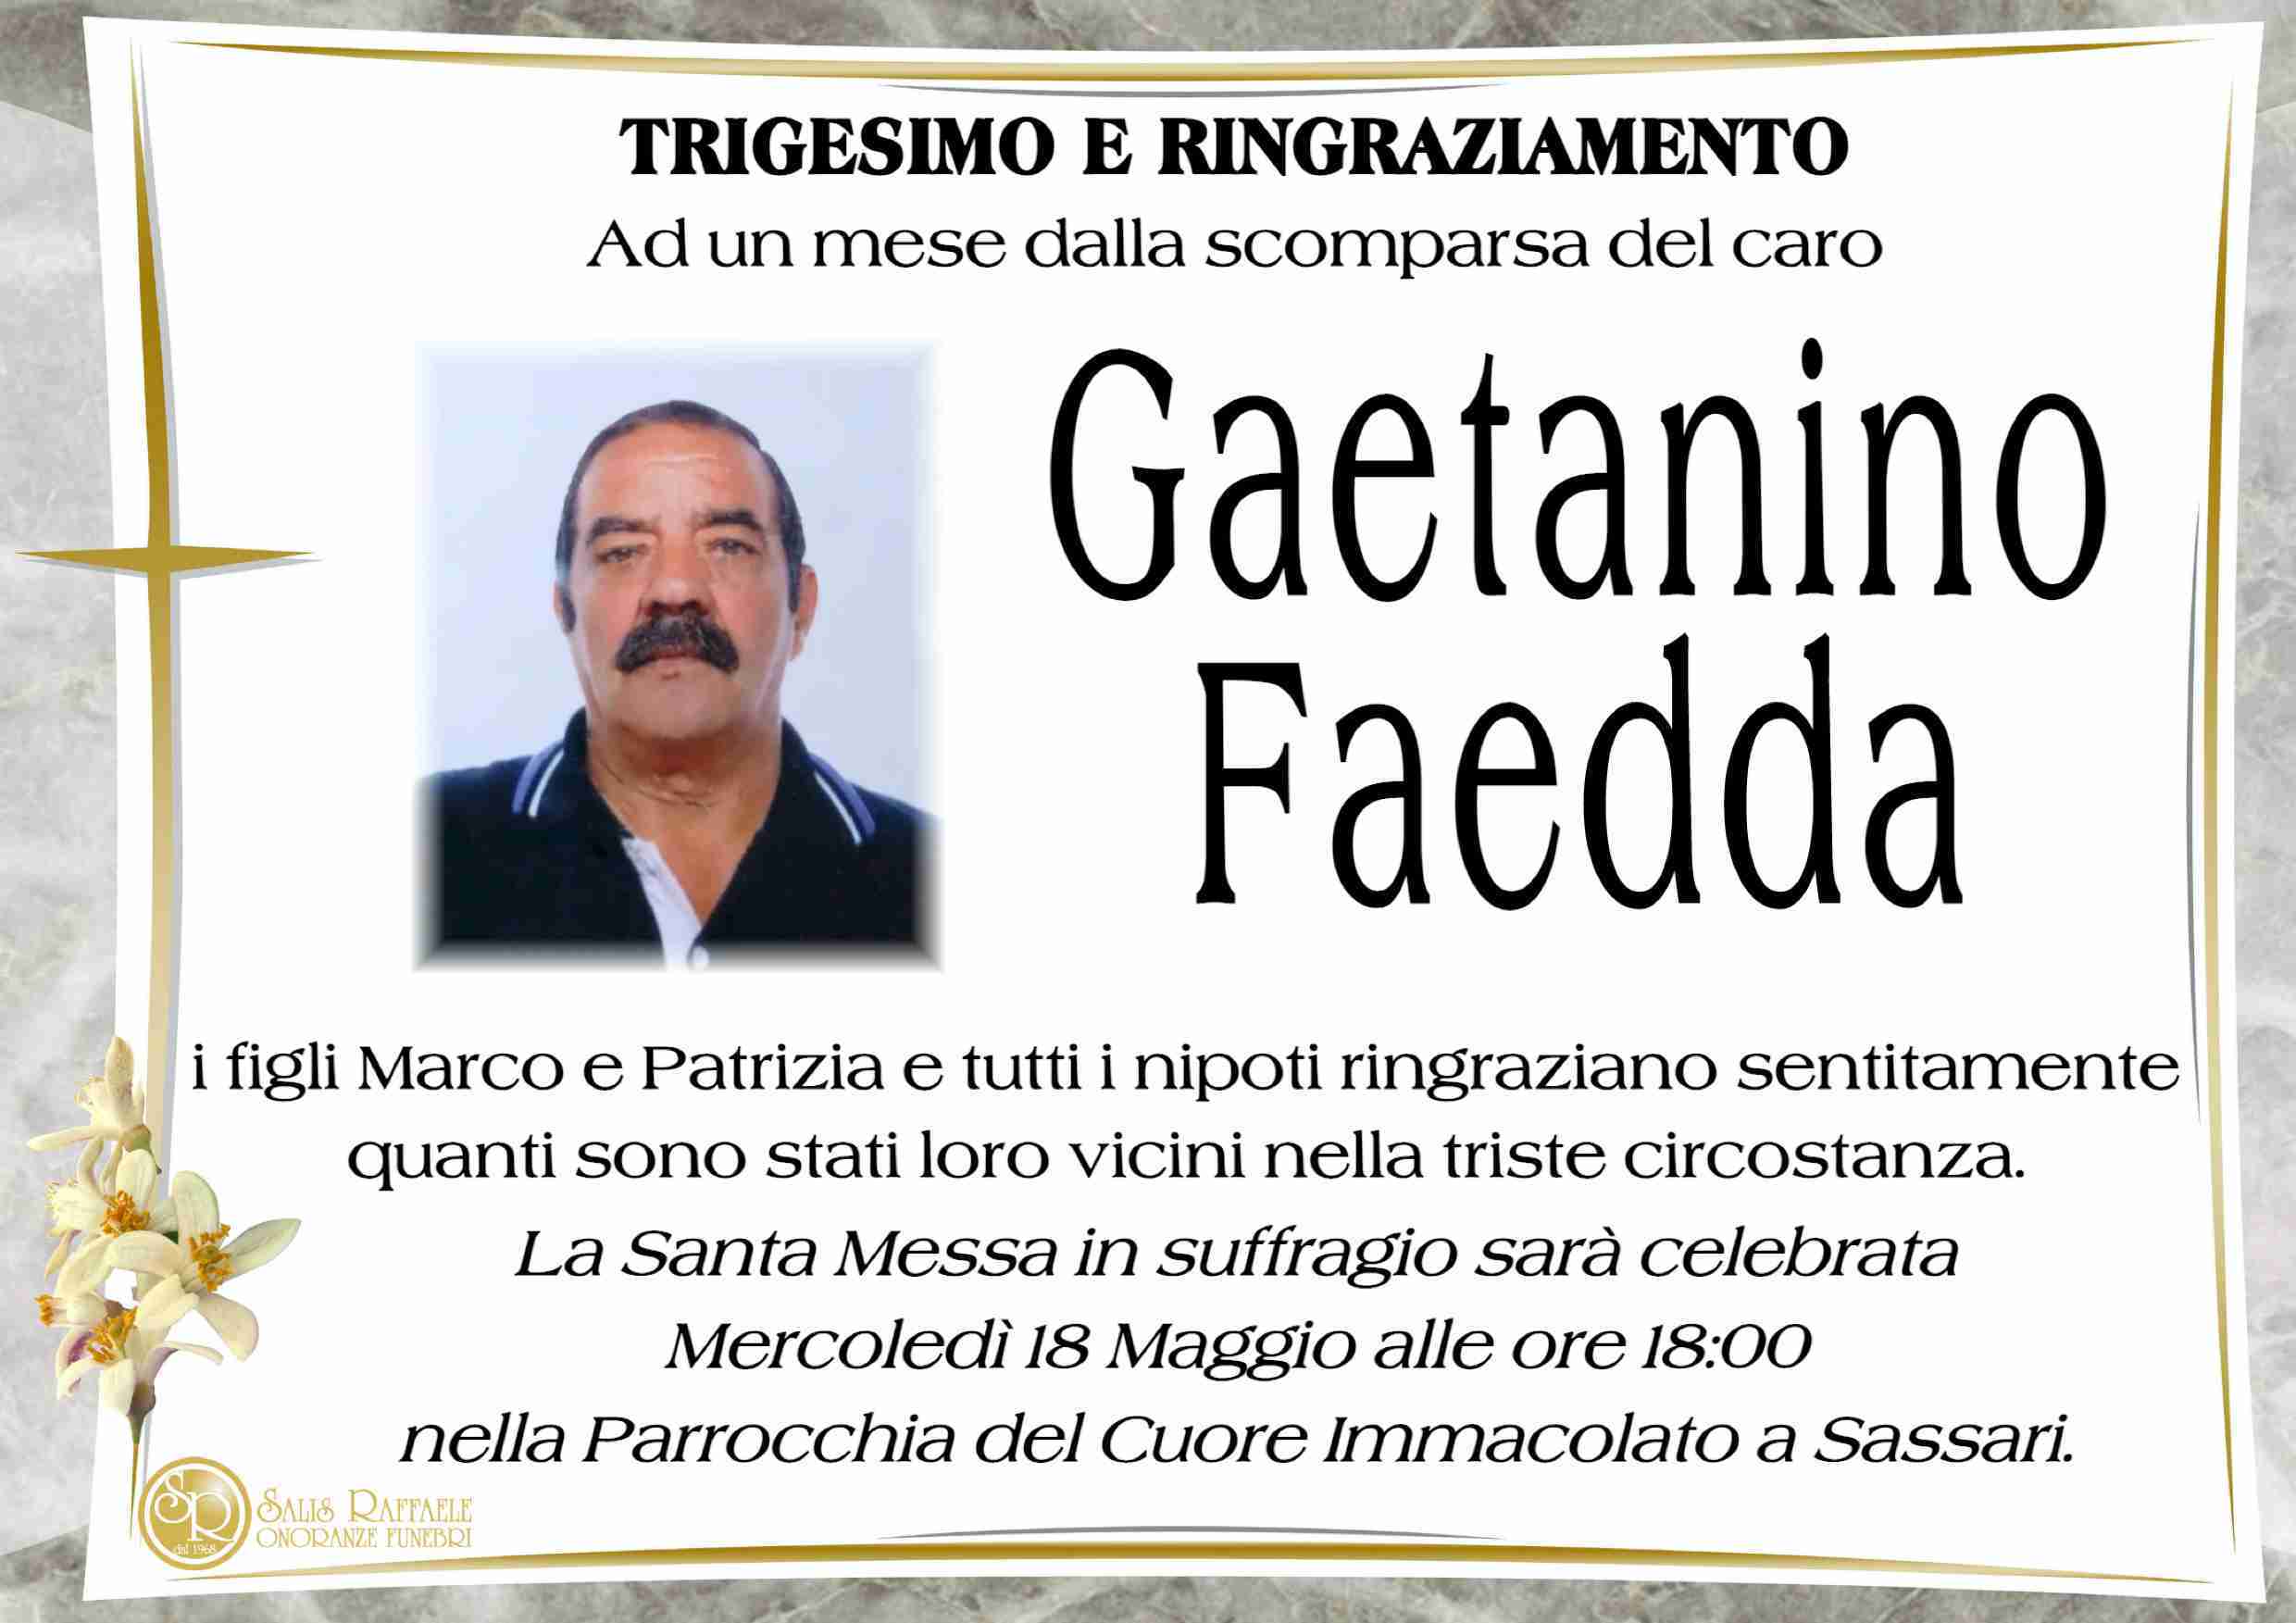 Gaetanino Faedda